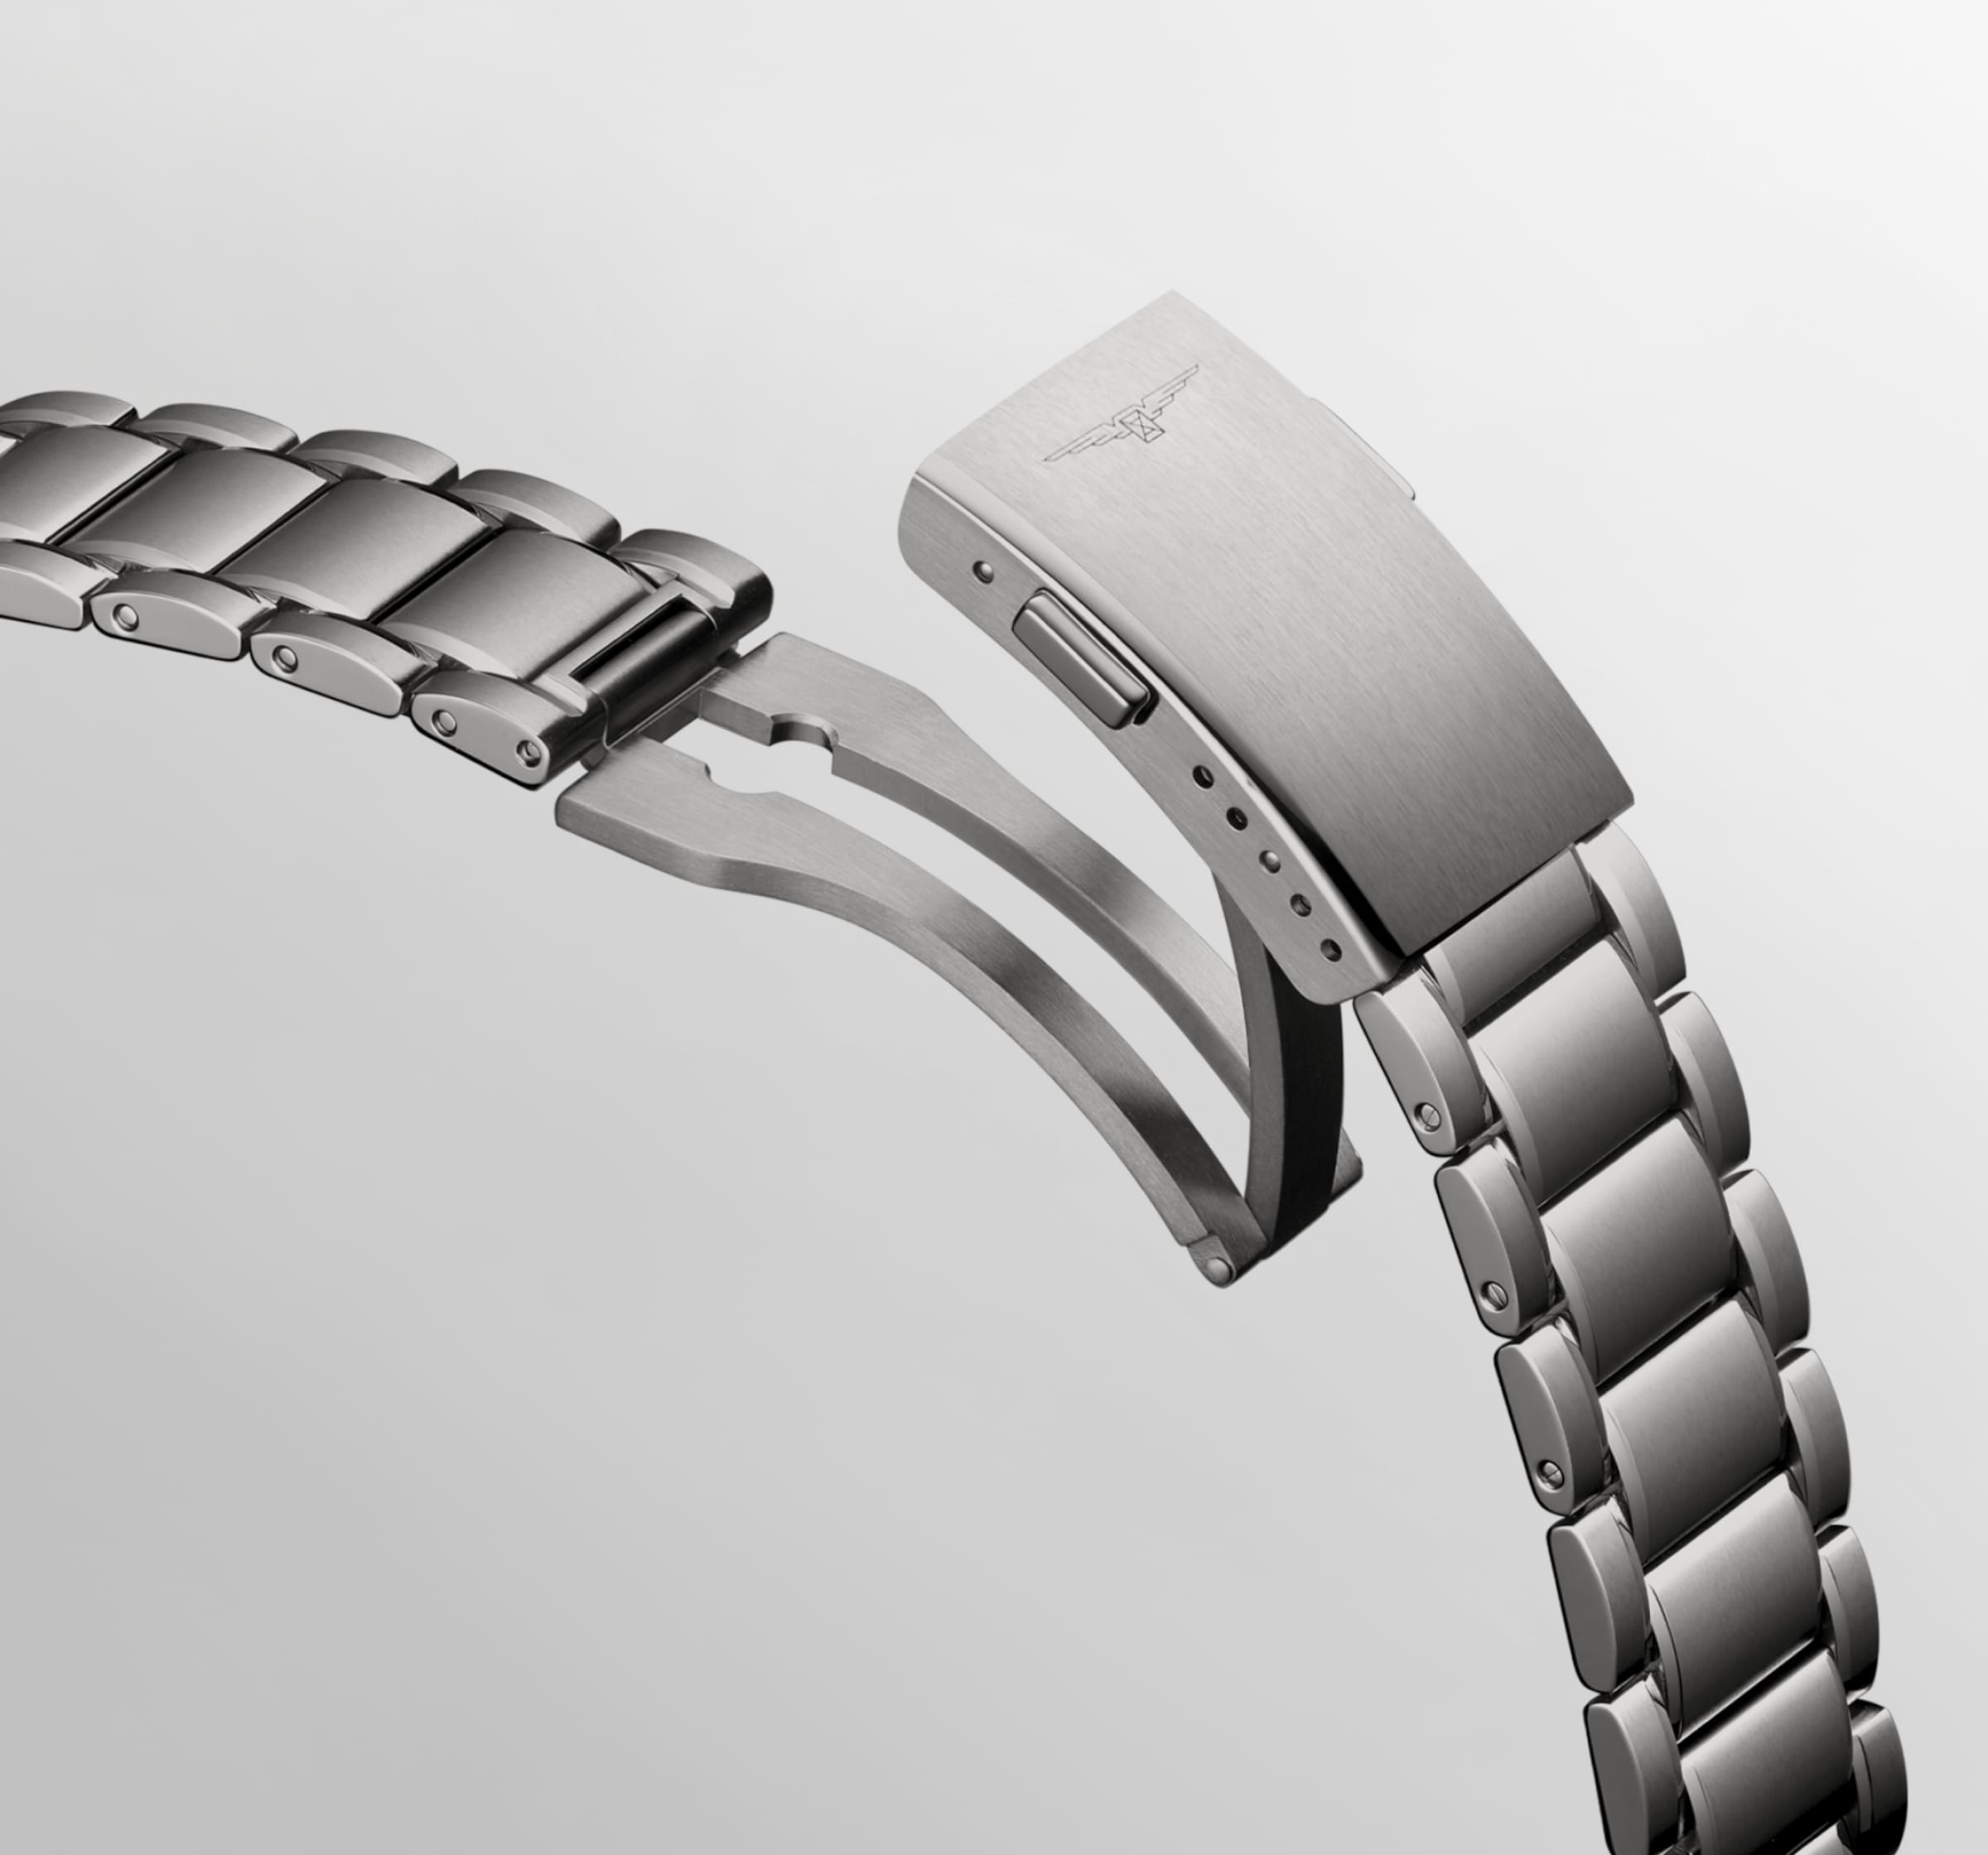 Longines SPIRIT Automatic Titanium Watch - L3.802.1.59.6